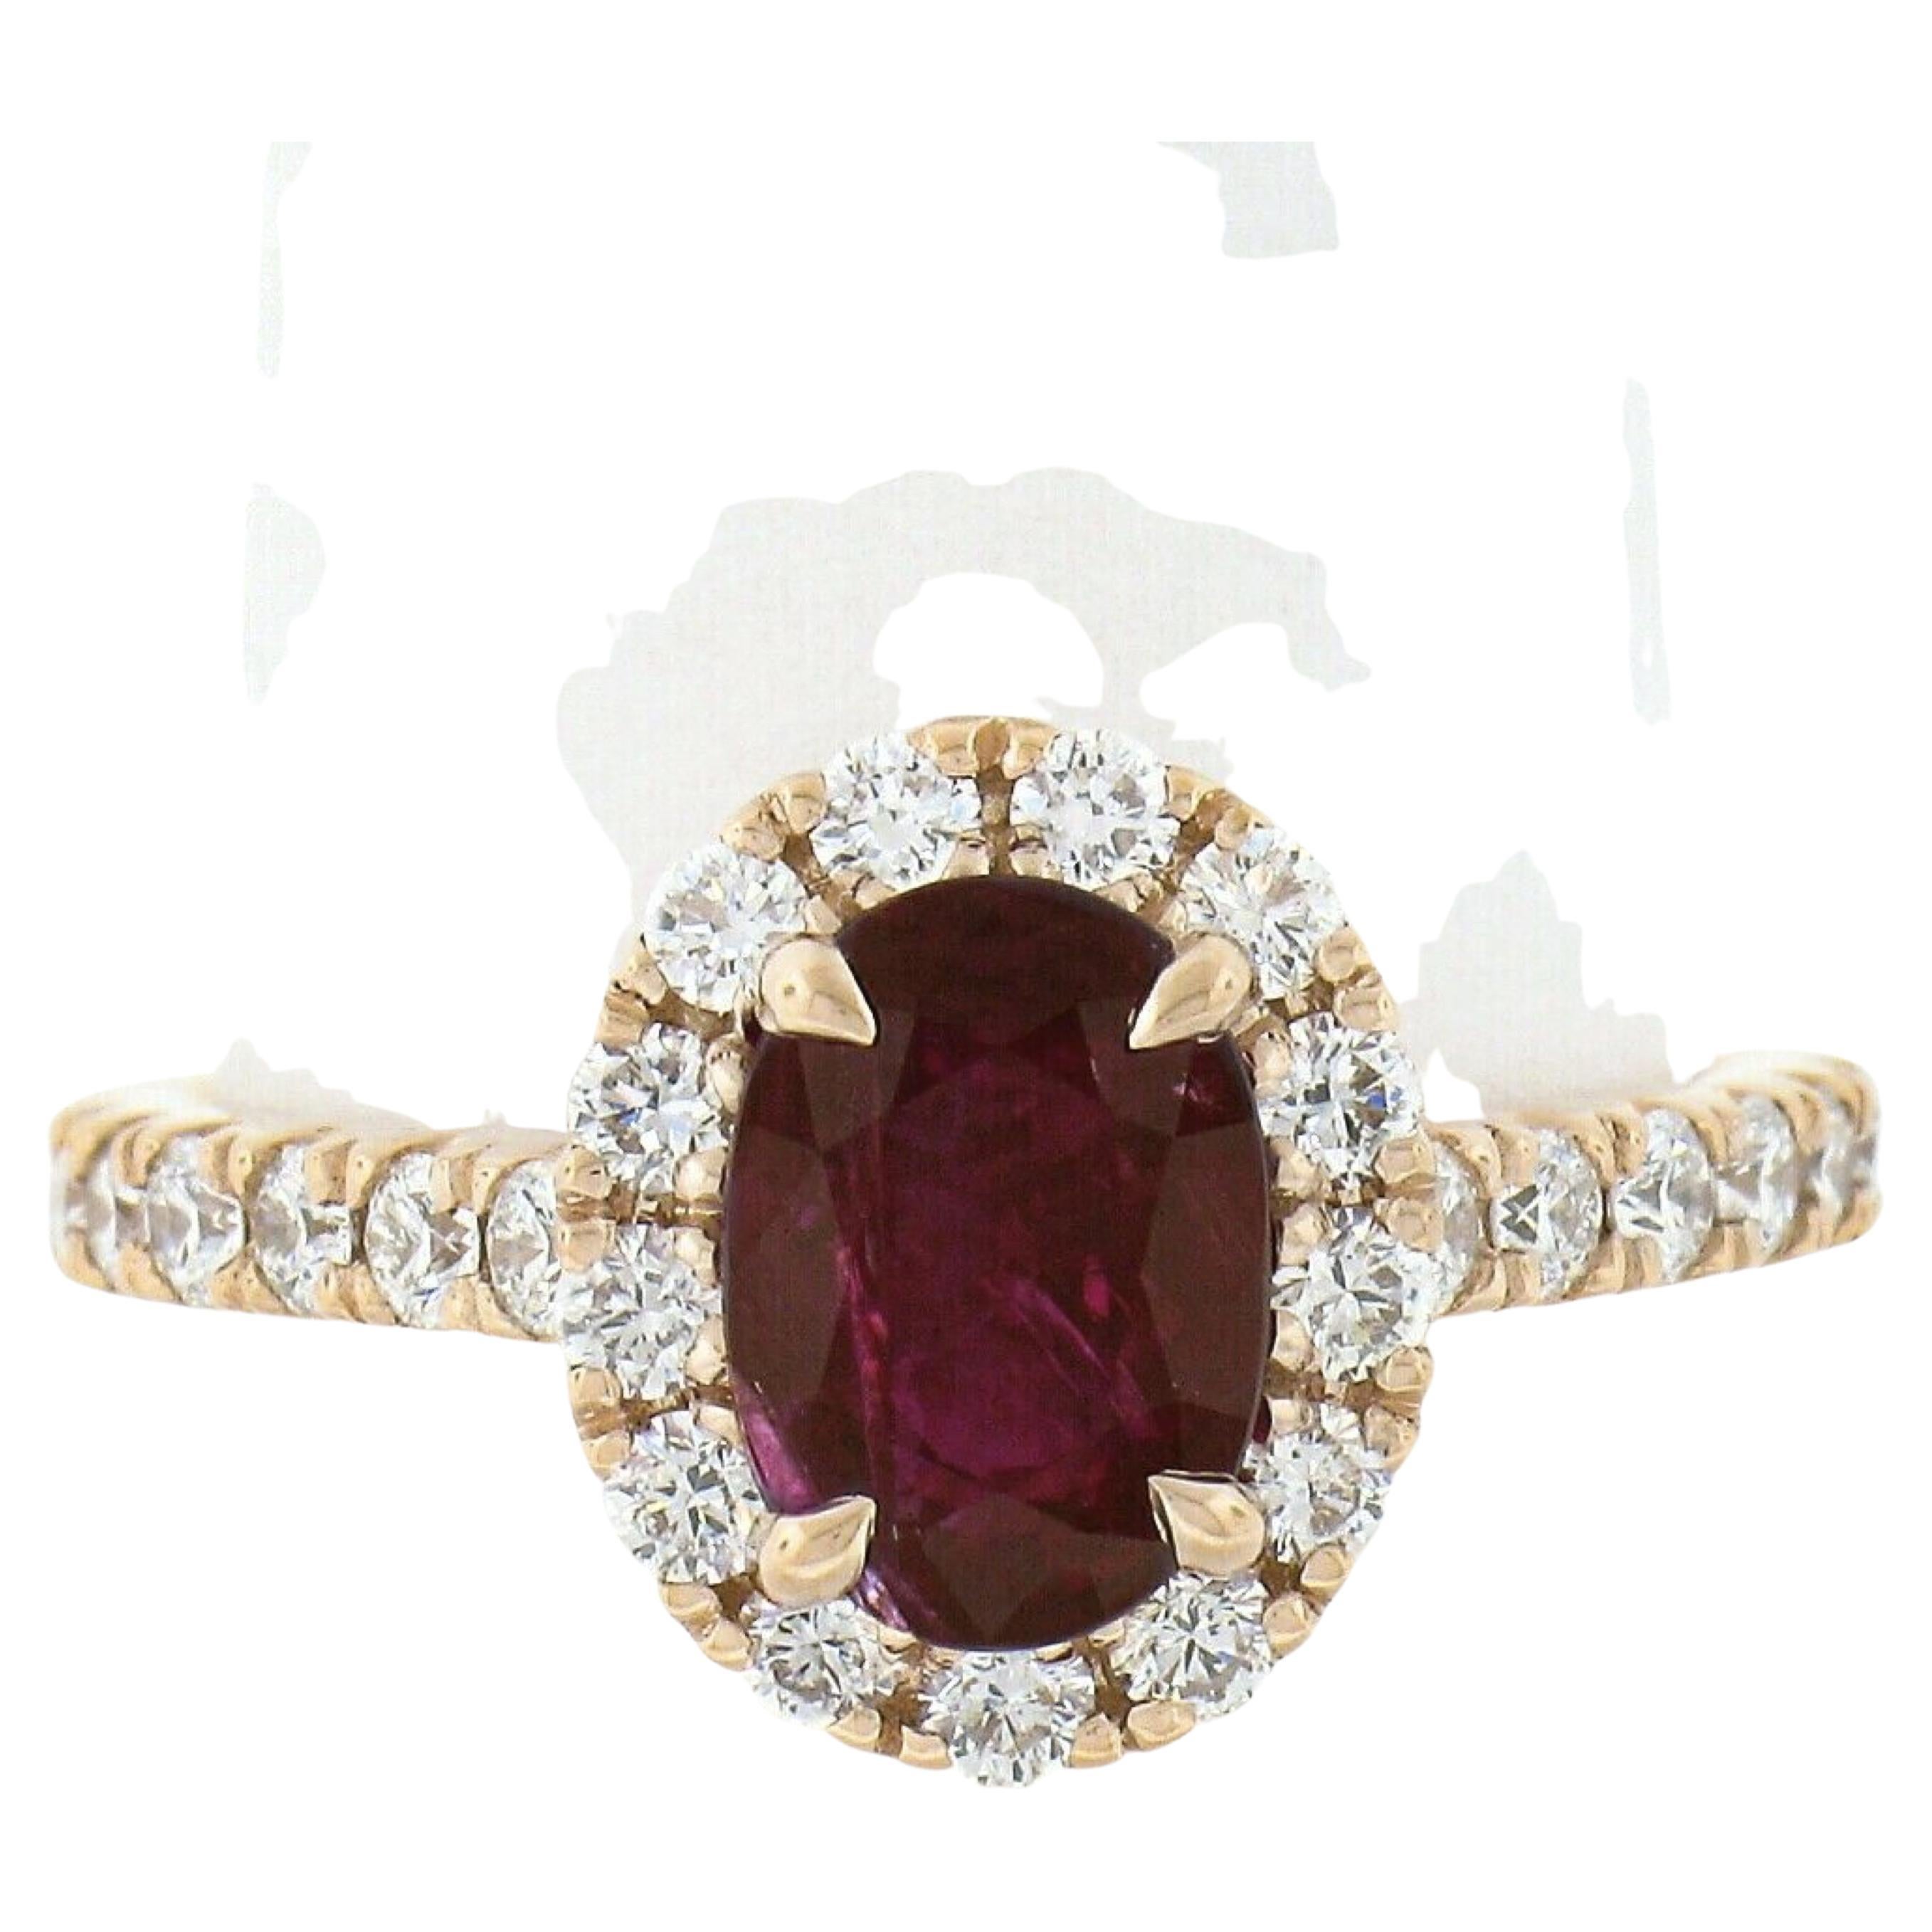 Nouvelle bague de fiançailles en or rose 14 carats avec rubis de Birmanie ovale de 3,28 carats certifié GIA et halo de diamants